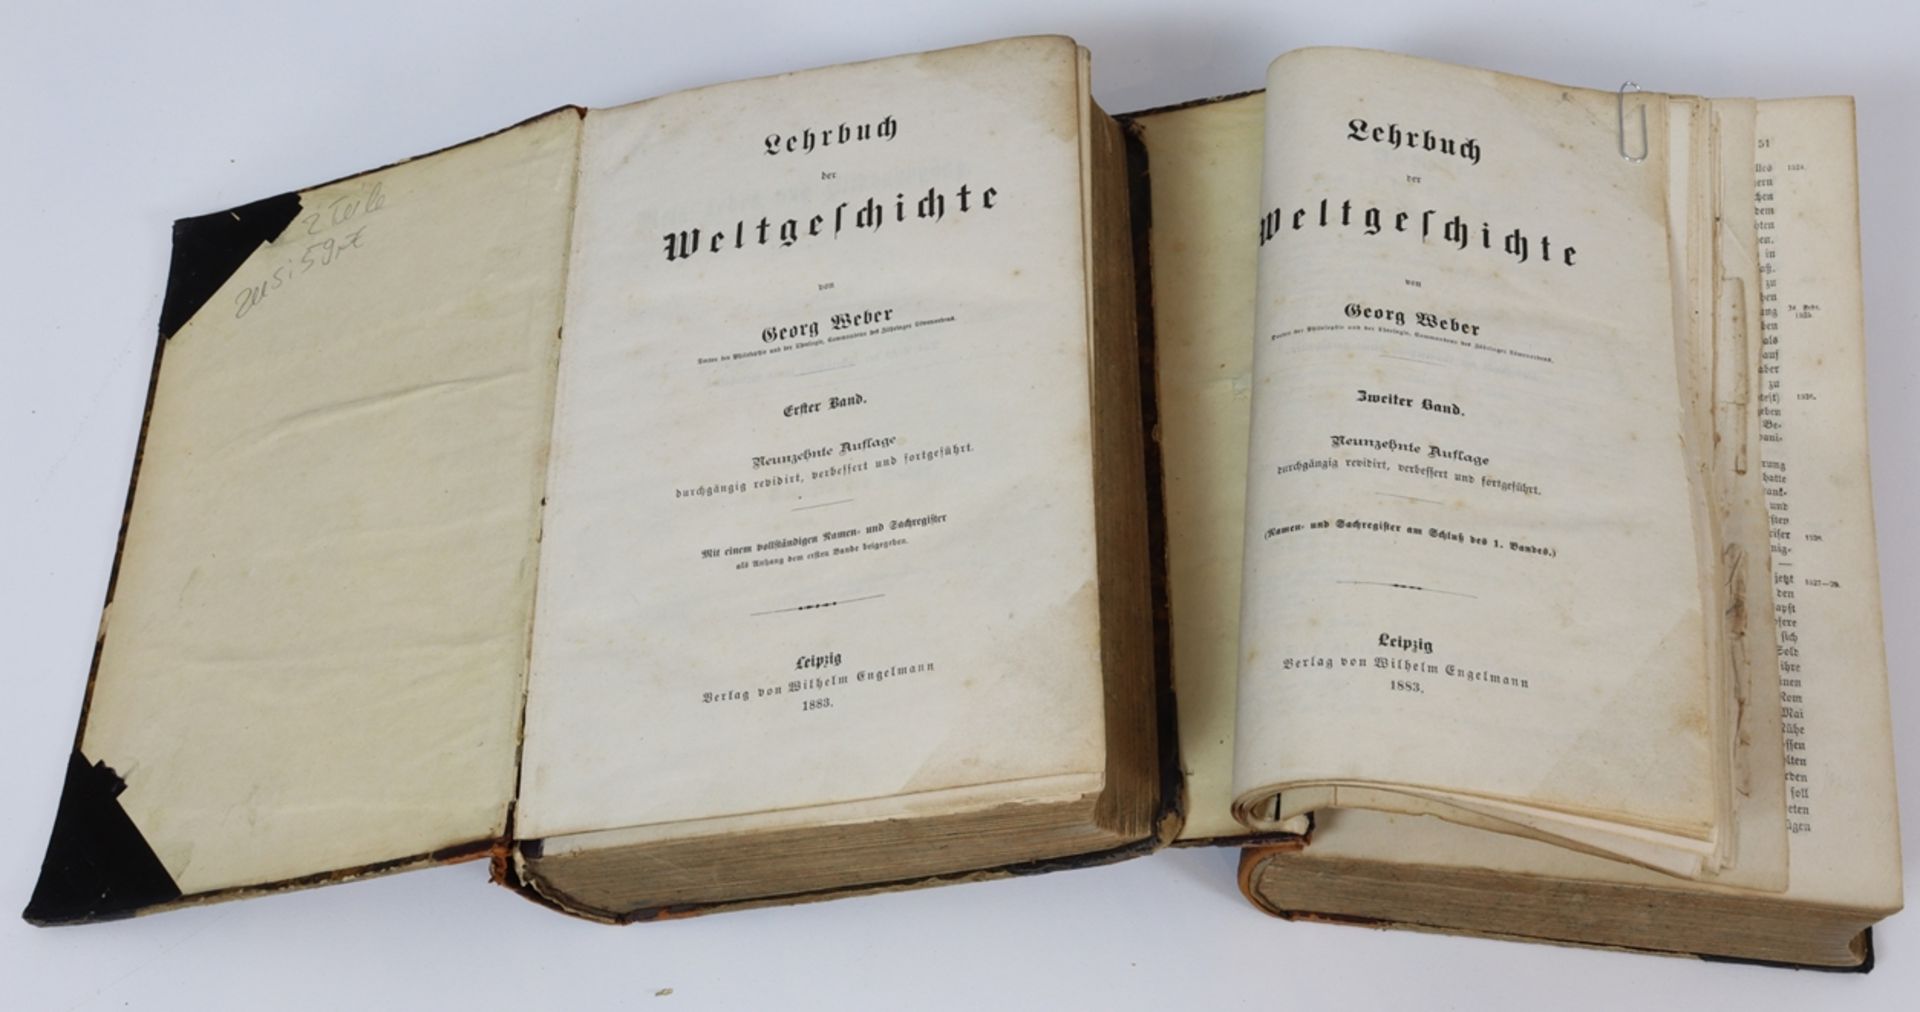 Georg Weber, Lehrbuch der Weltgeschichte in zwei Bänden - 1883 - Image 2 of 3